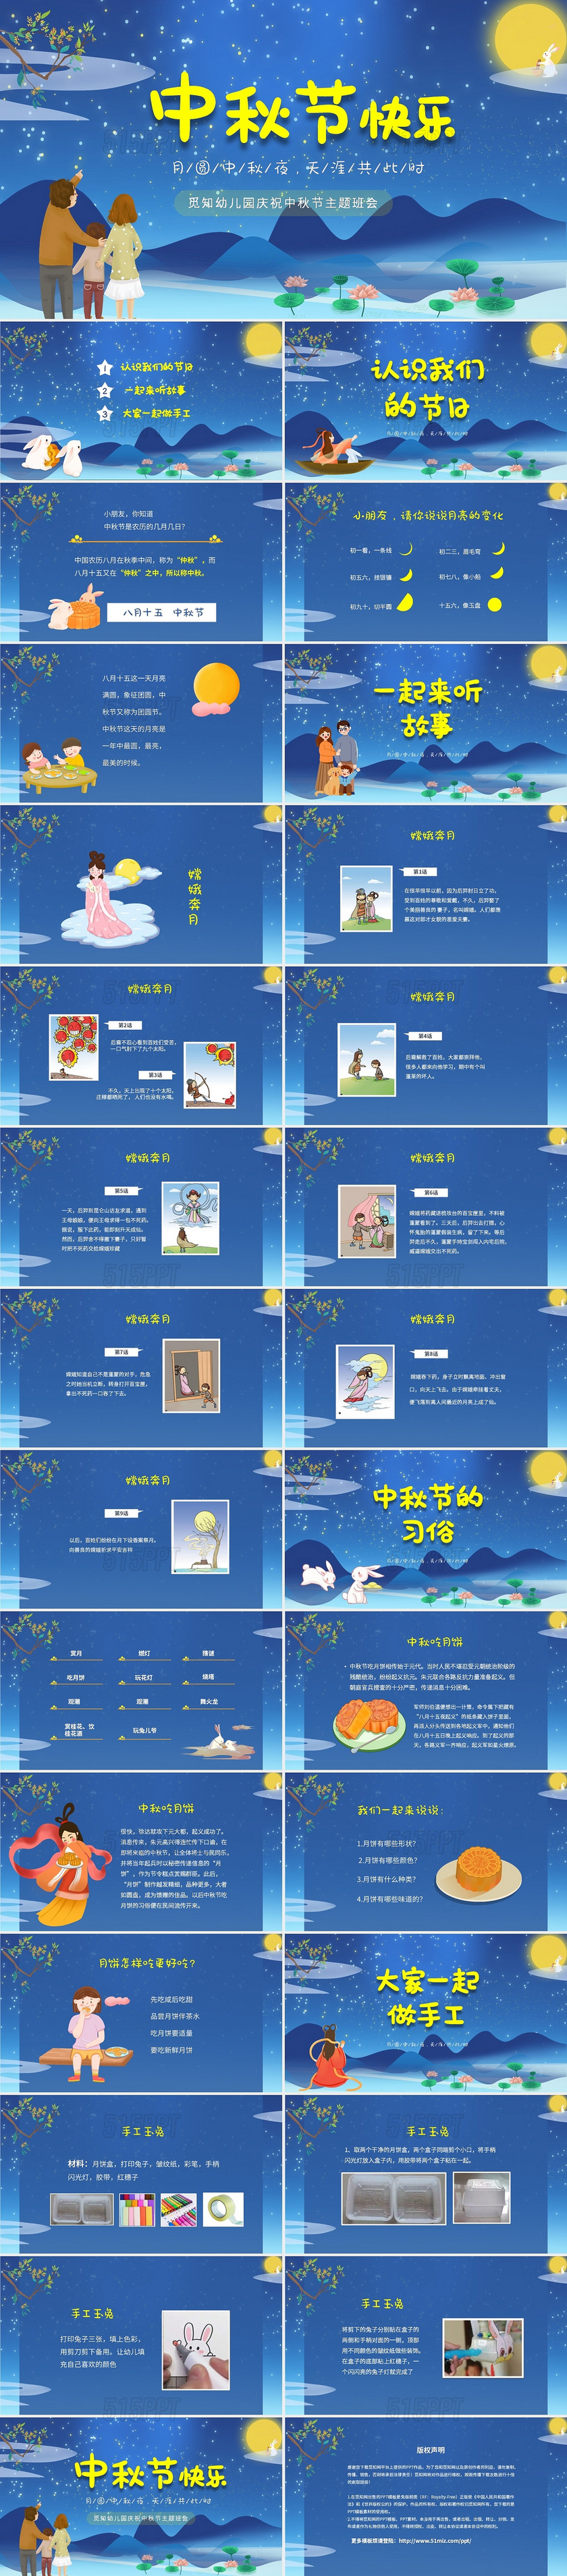 蓝色梦幻卡通儿童中国传统节日中秋节介绍主题班会